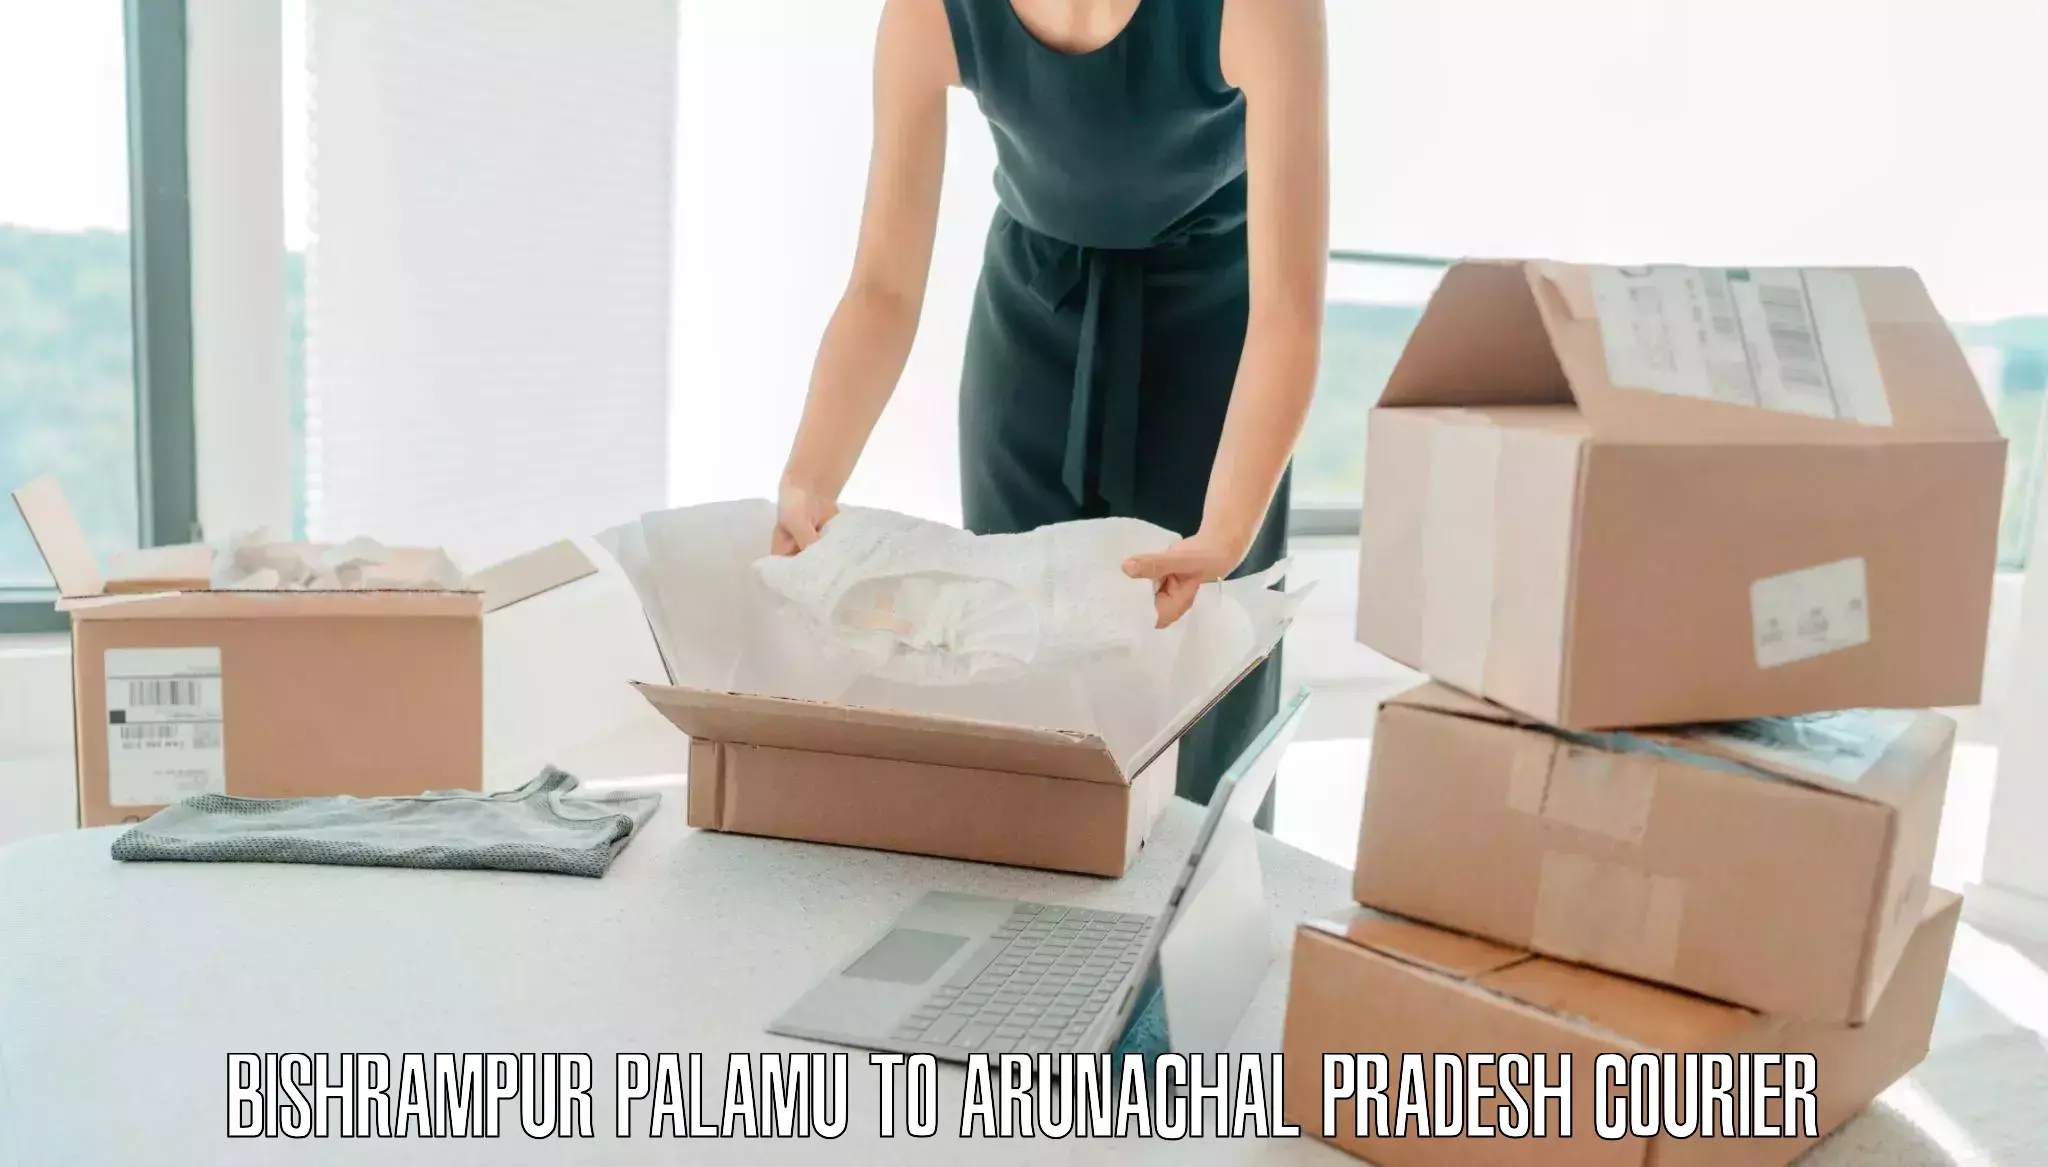 Efficient baggage courier system Bishrampur Palamu to Longding